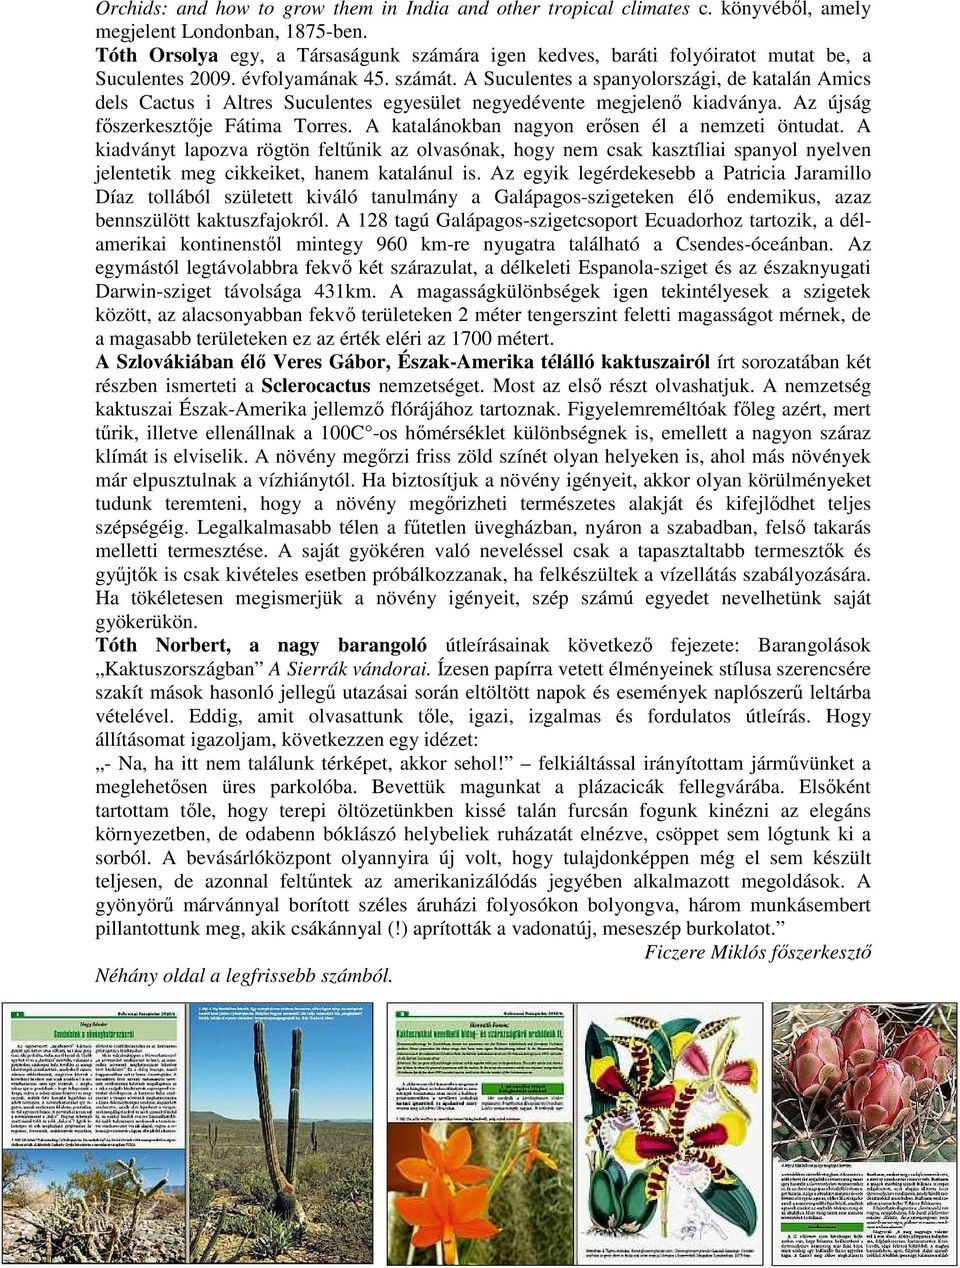 A Suculentes a spanyolországi, de katalán Amics dels Cactus i Altres Suculentes egyesület negyedévente megjelenı kiadványa. Az újság fıszerkesztıje Fátima Torres.